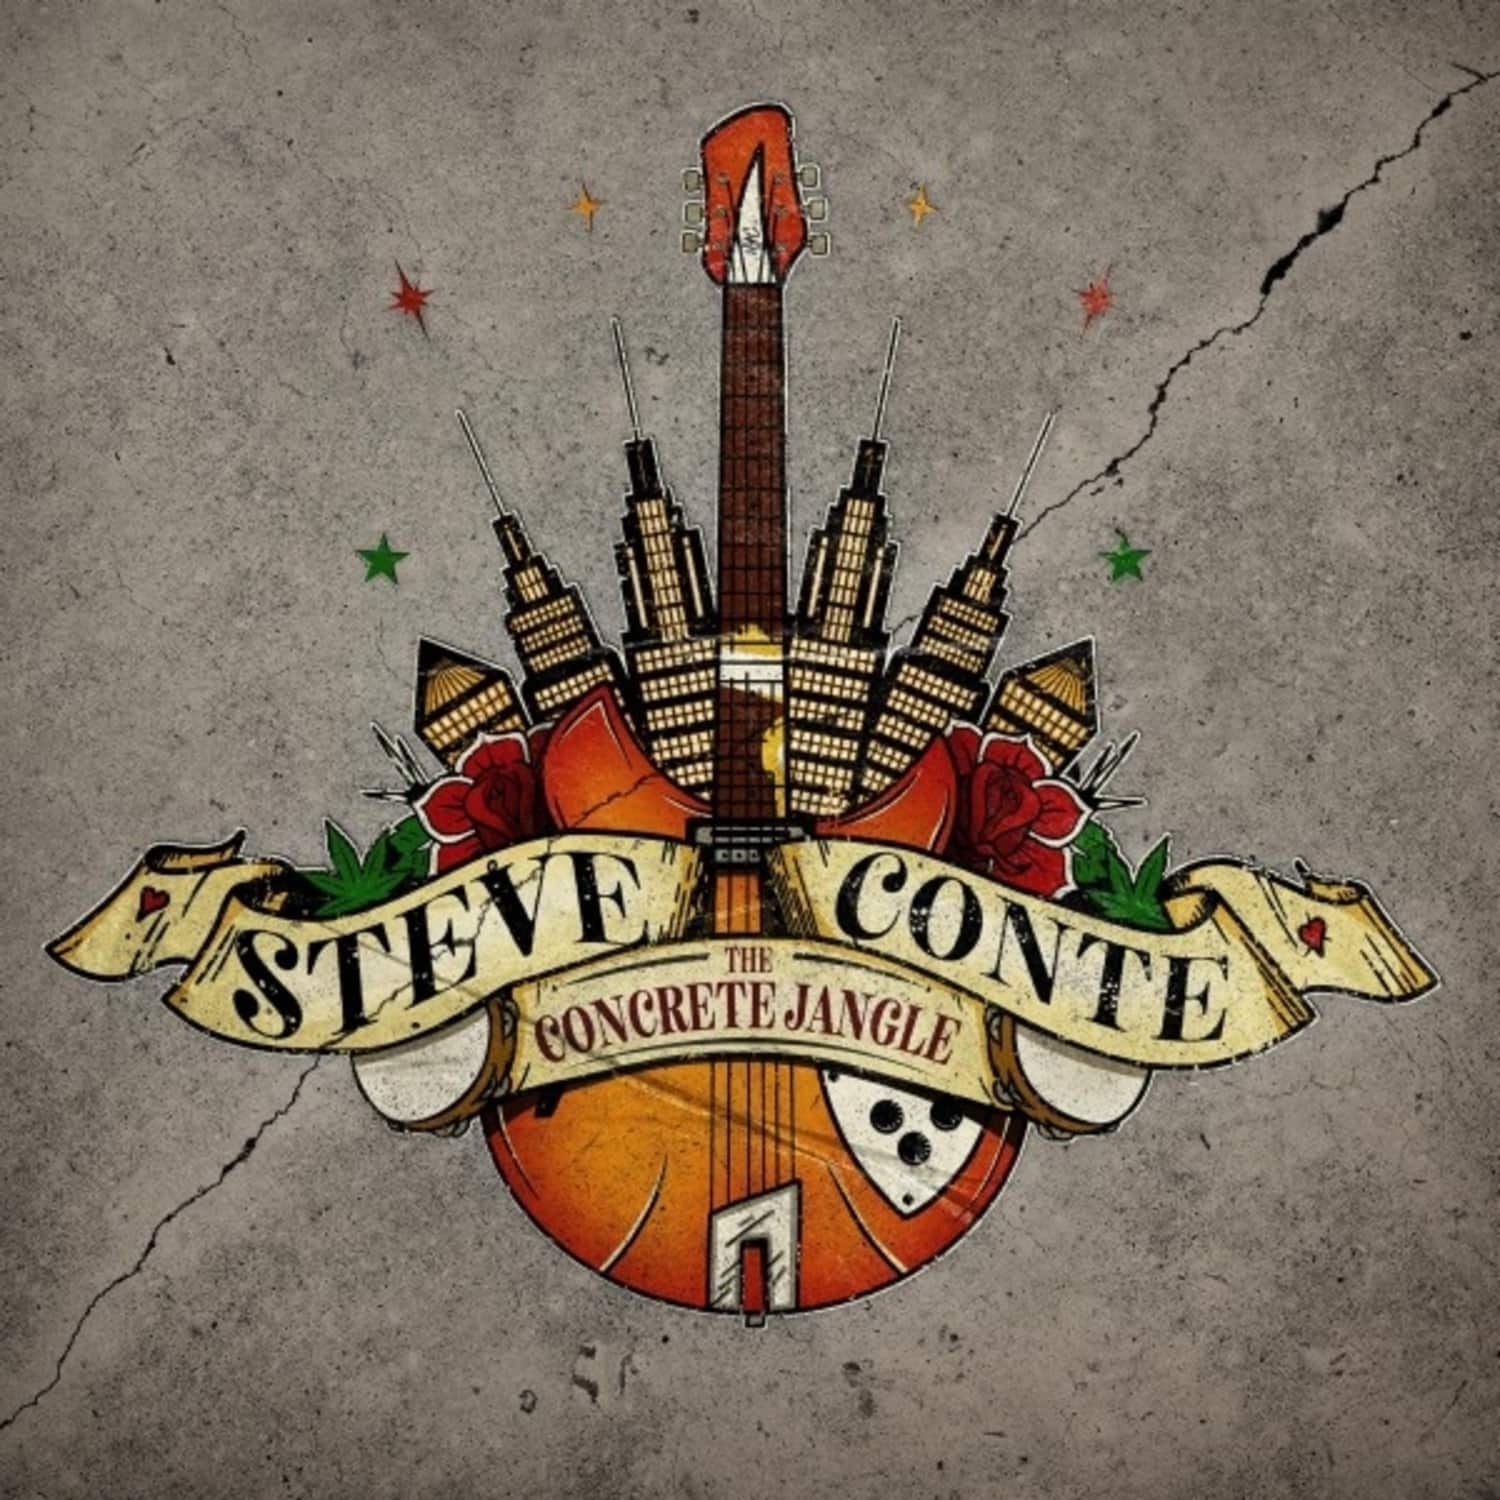 Steve Conte - THE CONCRETE JANGLE 